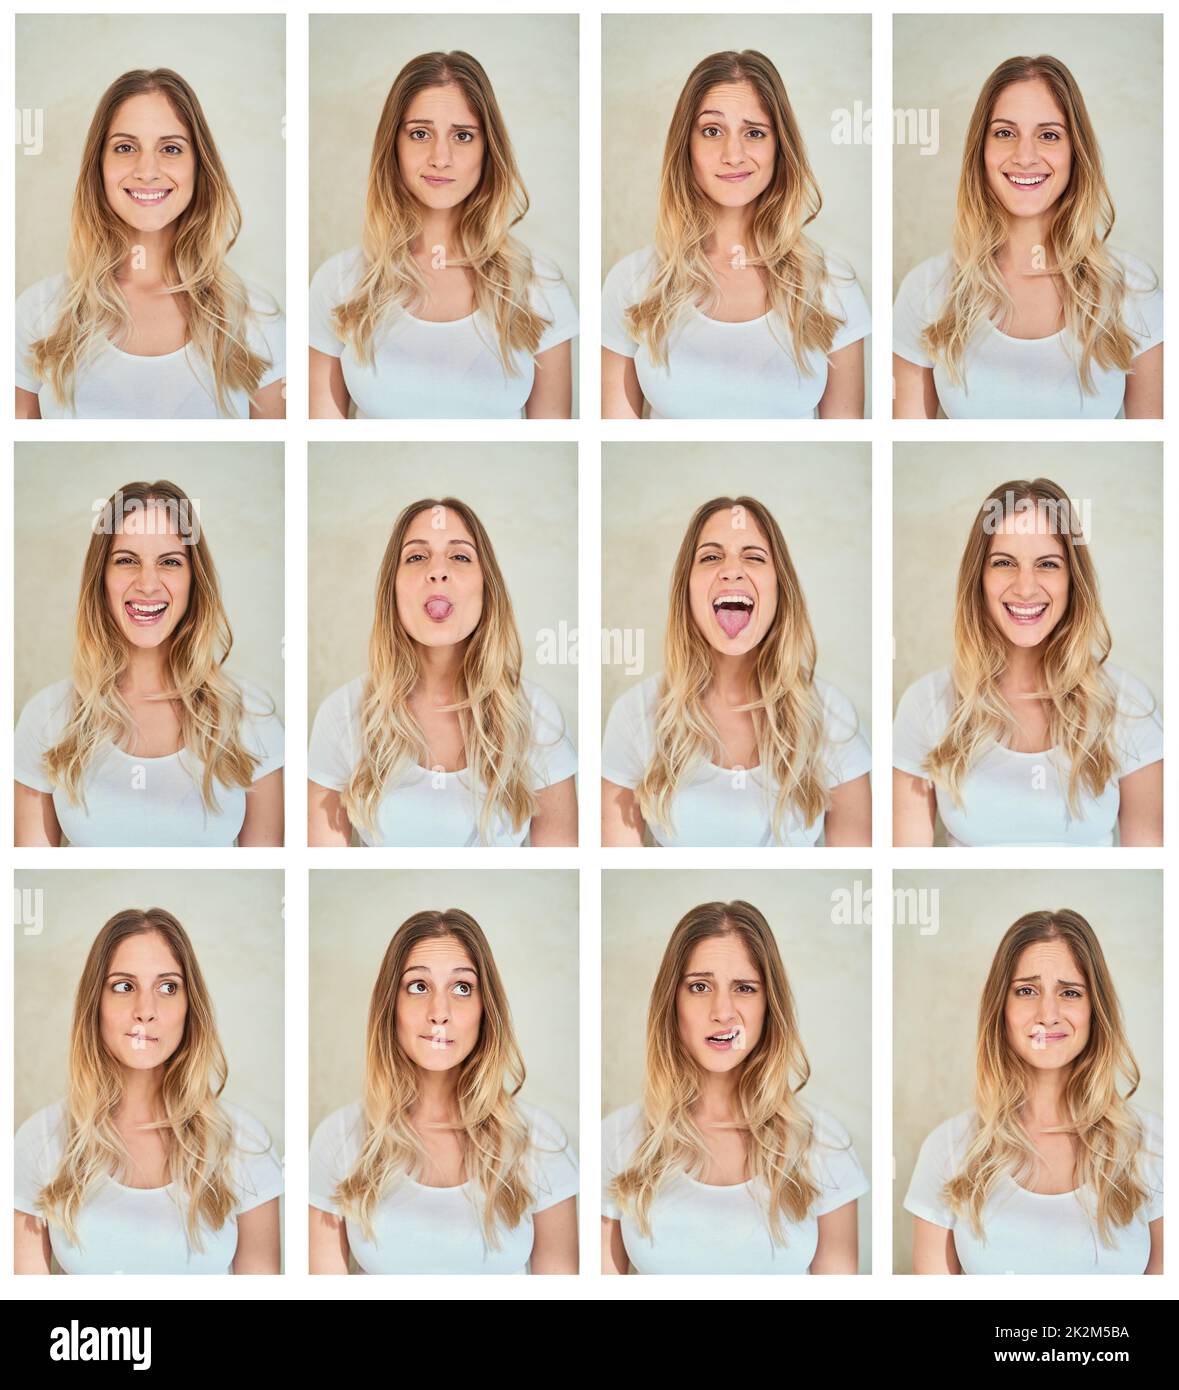 Sei wer auch immer du sein willst. Zusammengesetzte Aufnahme einer jungen Frau, die im Studio verschiedene Gesichtsausdrücke macht. Stockfoto